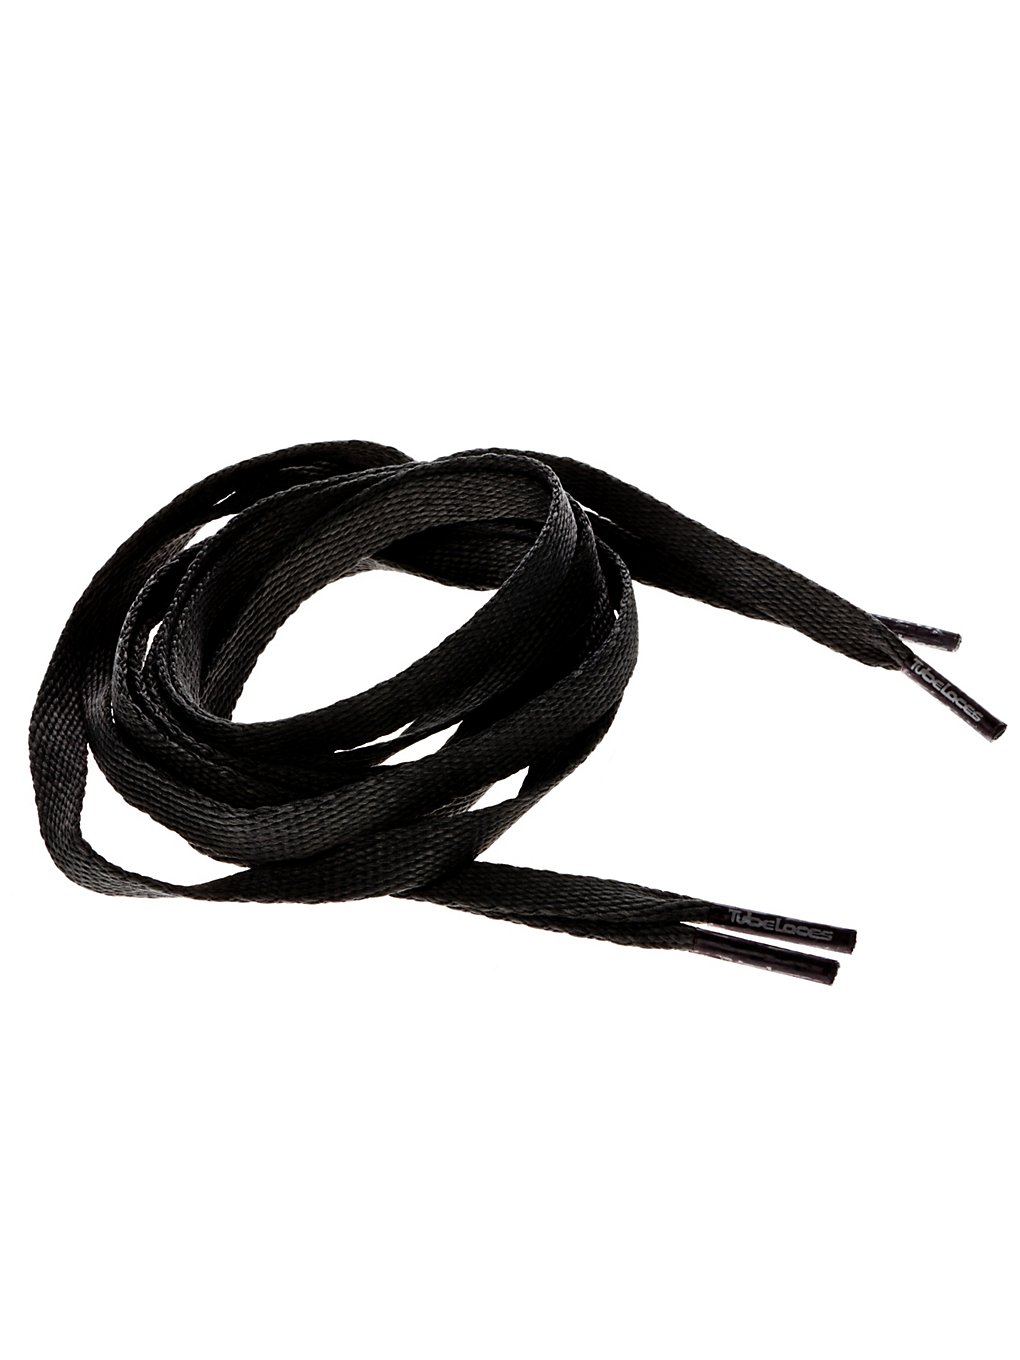 TubeLaces KMA Flat 120cm Shoelaces black